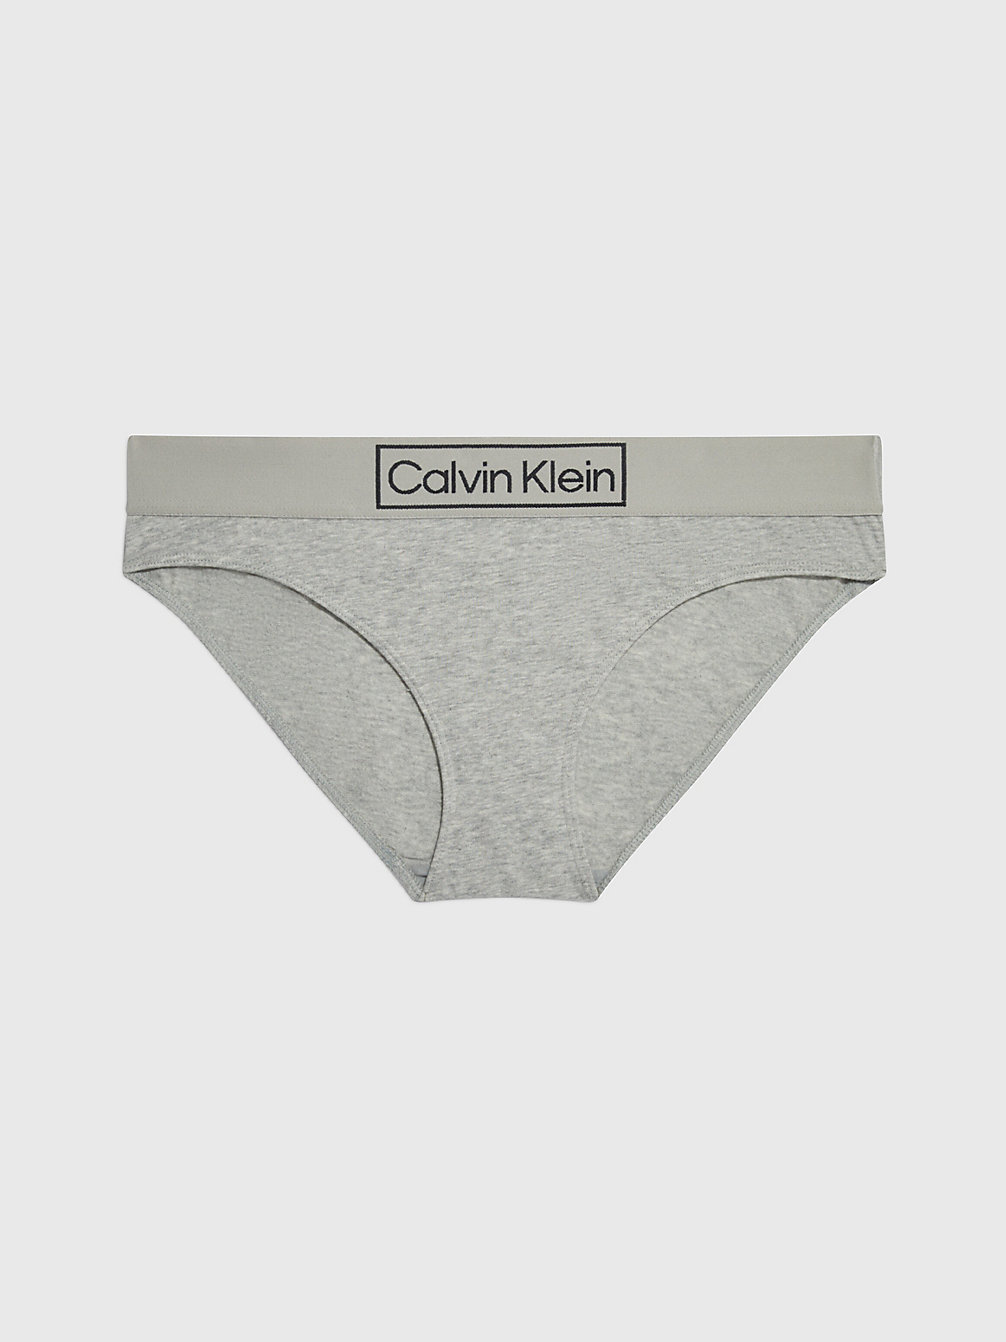 GREY HEATHER Slip Bikini - Reimagined Heritage undefined donna Calvin Klein